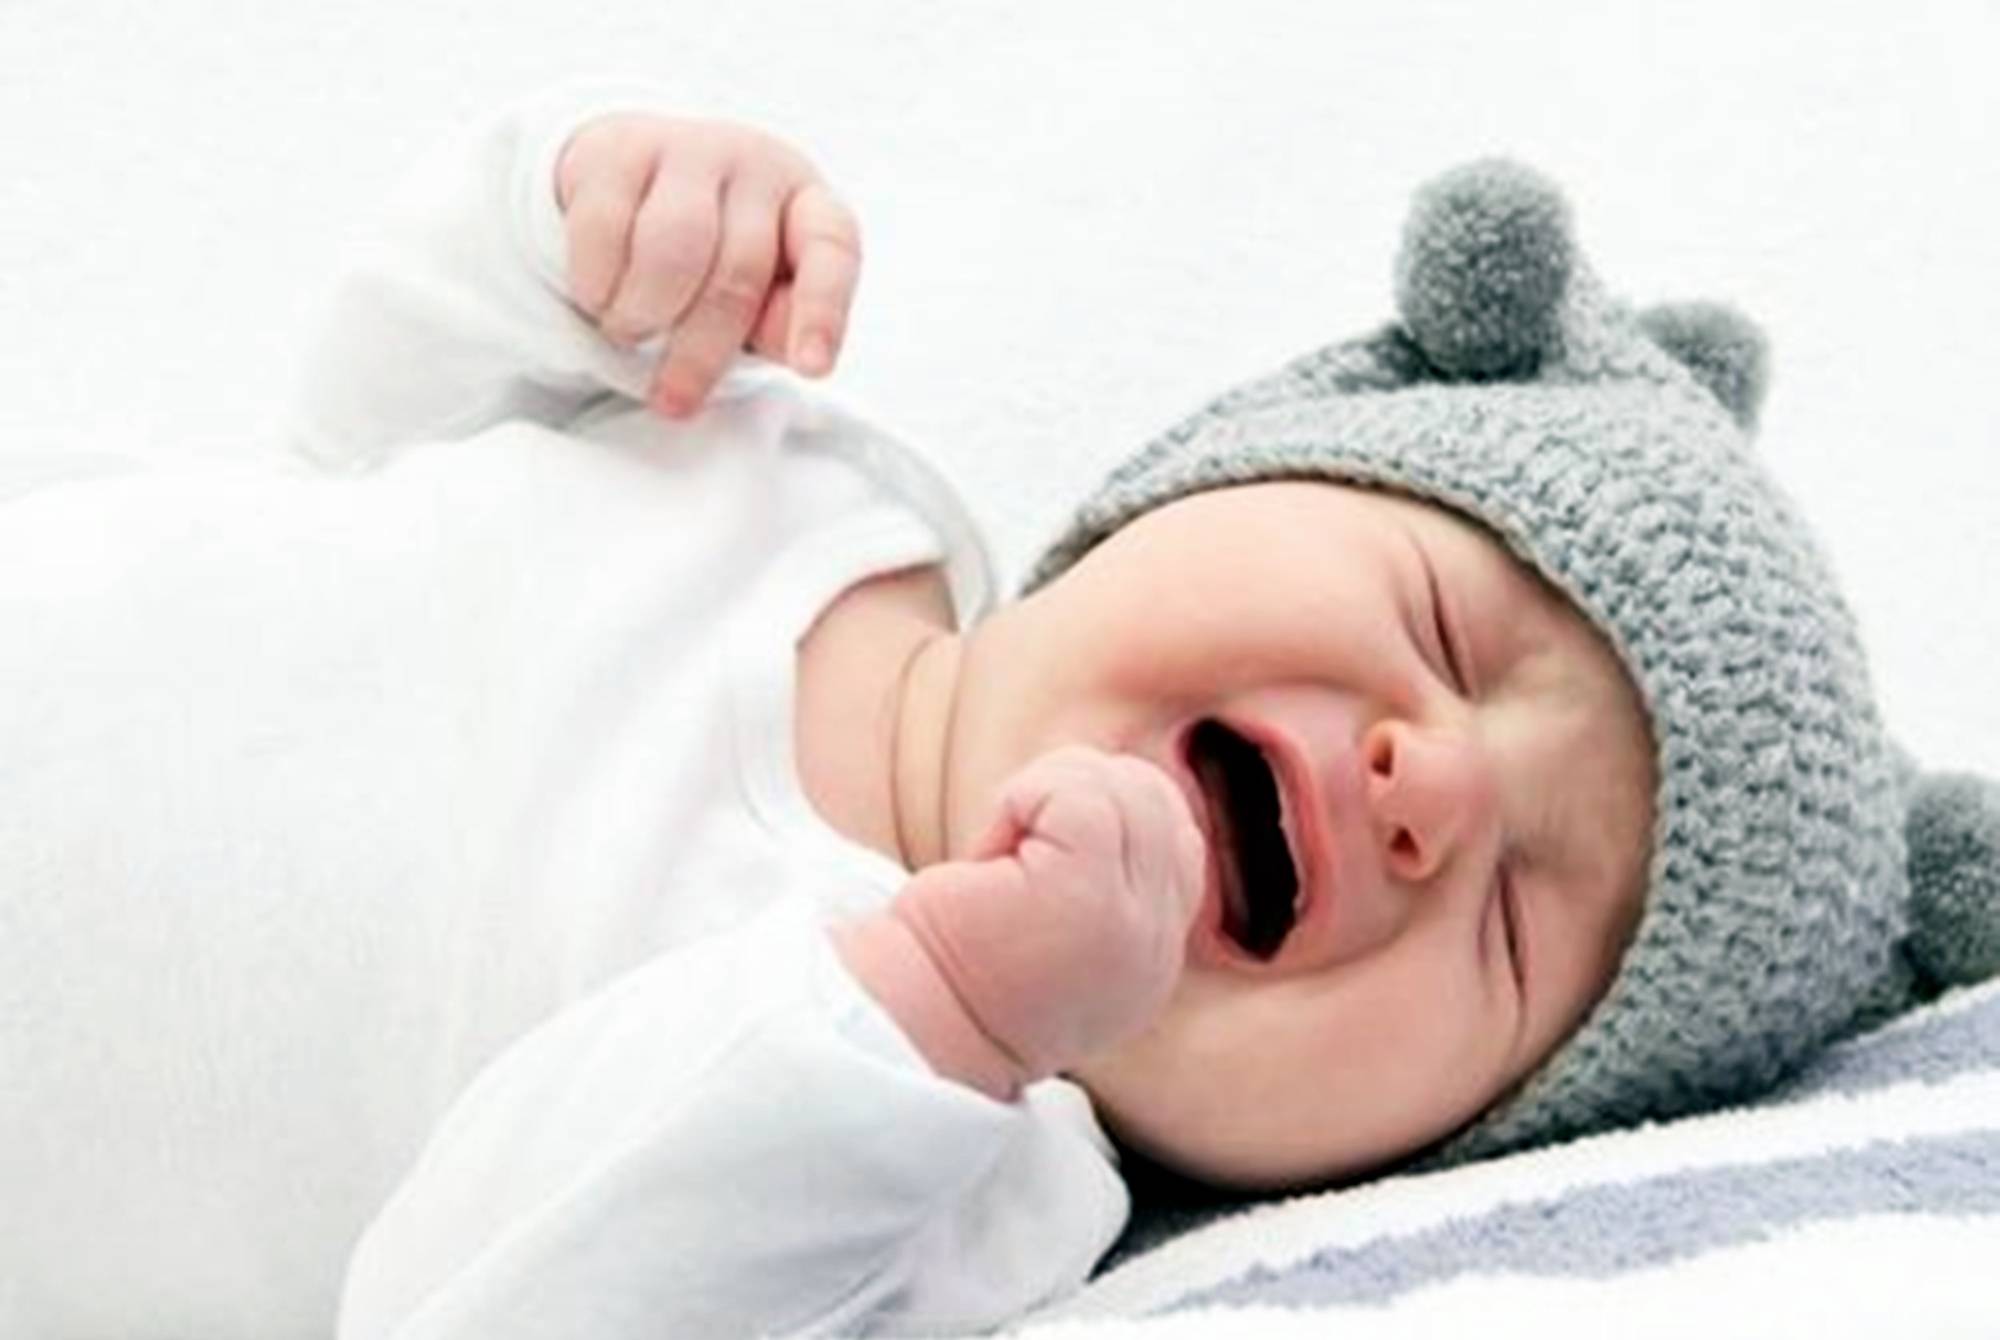 可爱的龙凤胎宝宝喝奶-蓝牛仔影像-中国原创广告影像素材